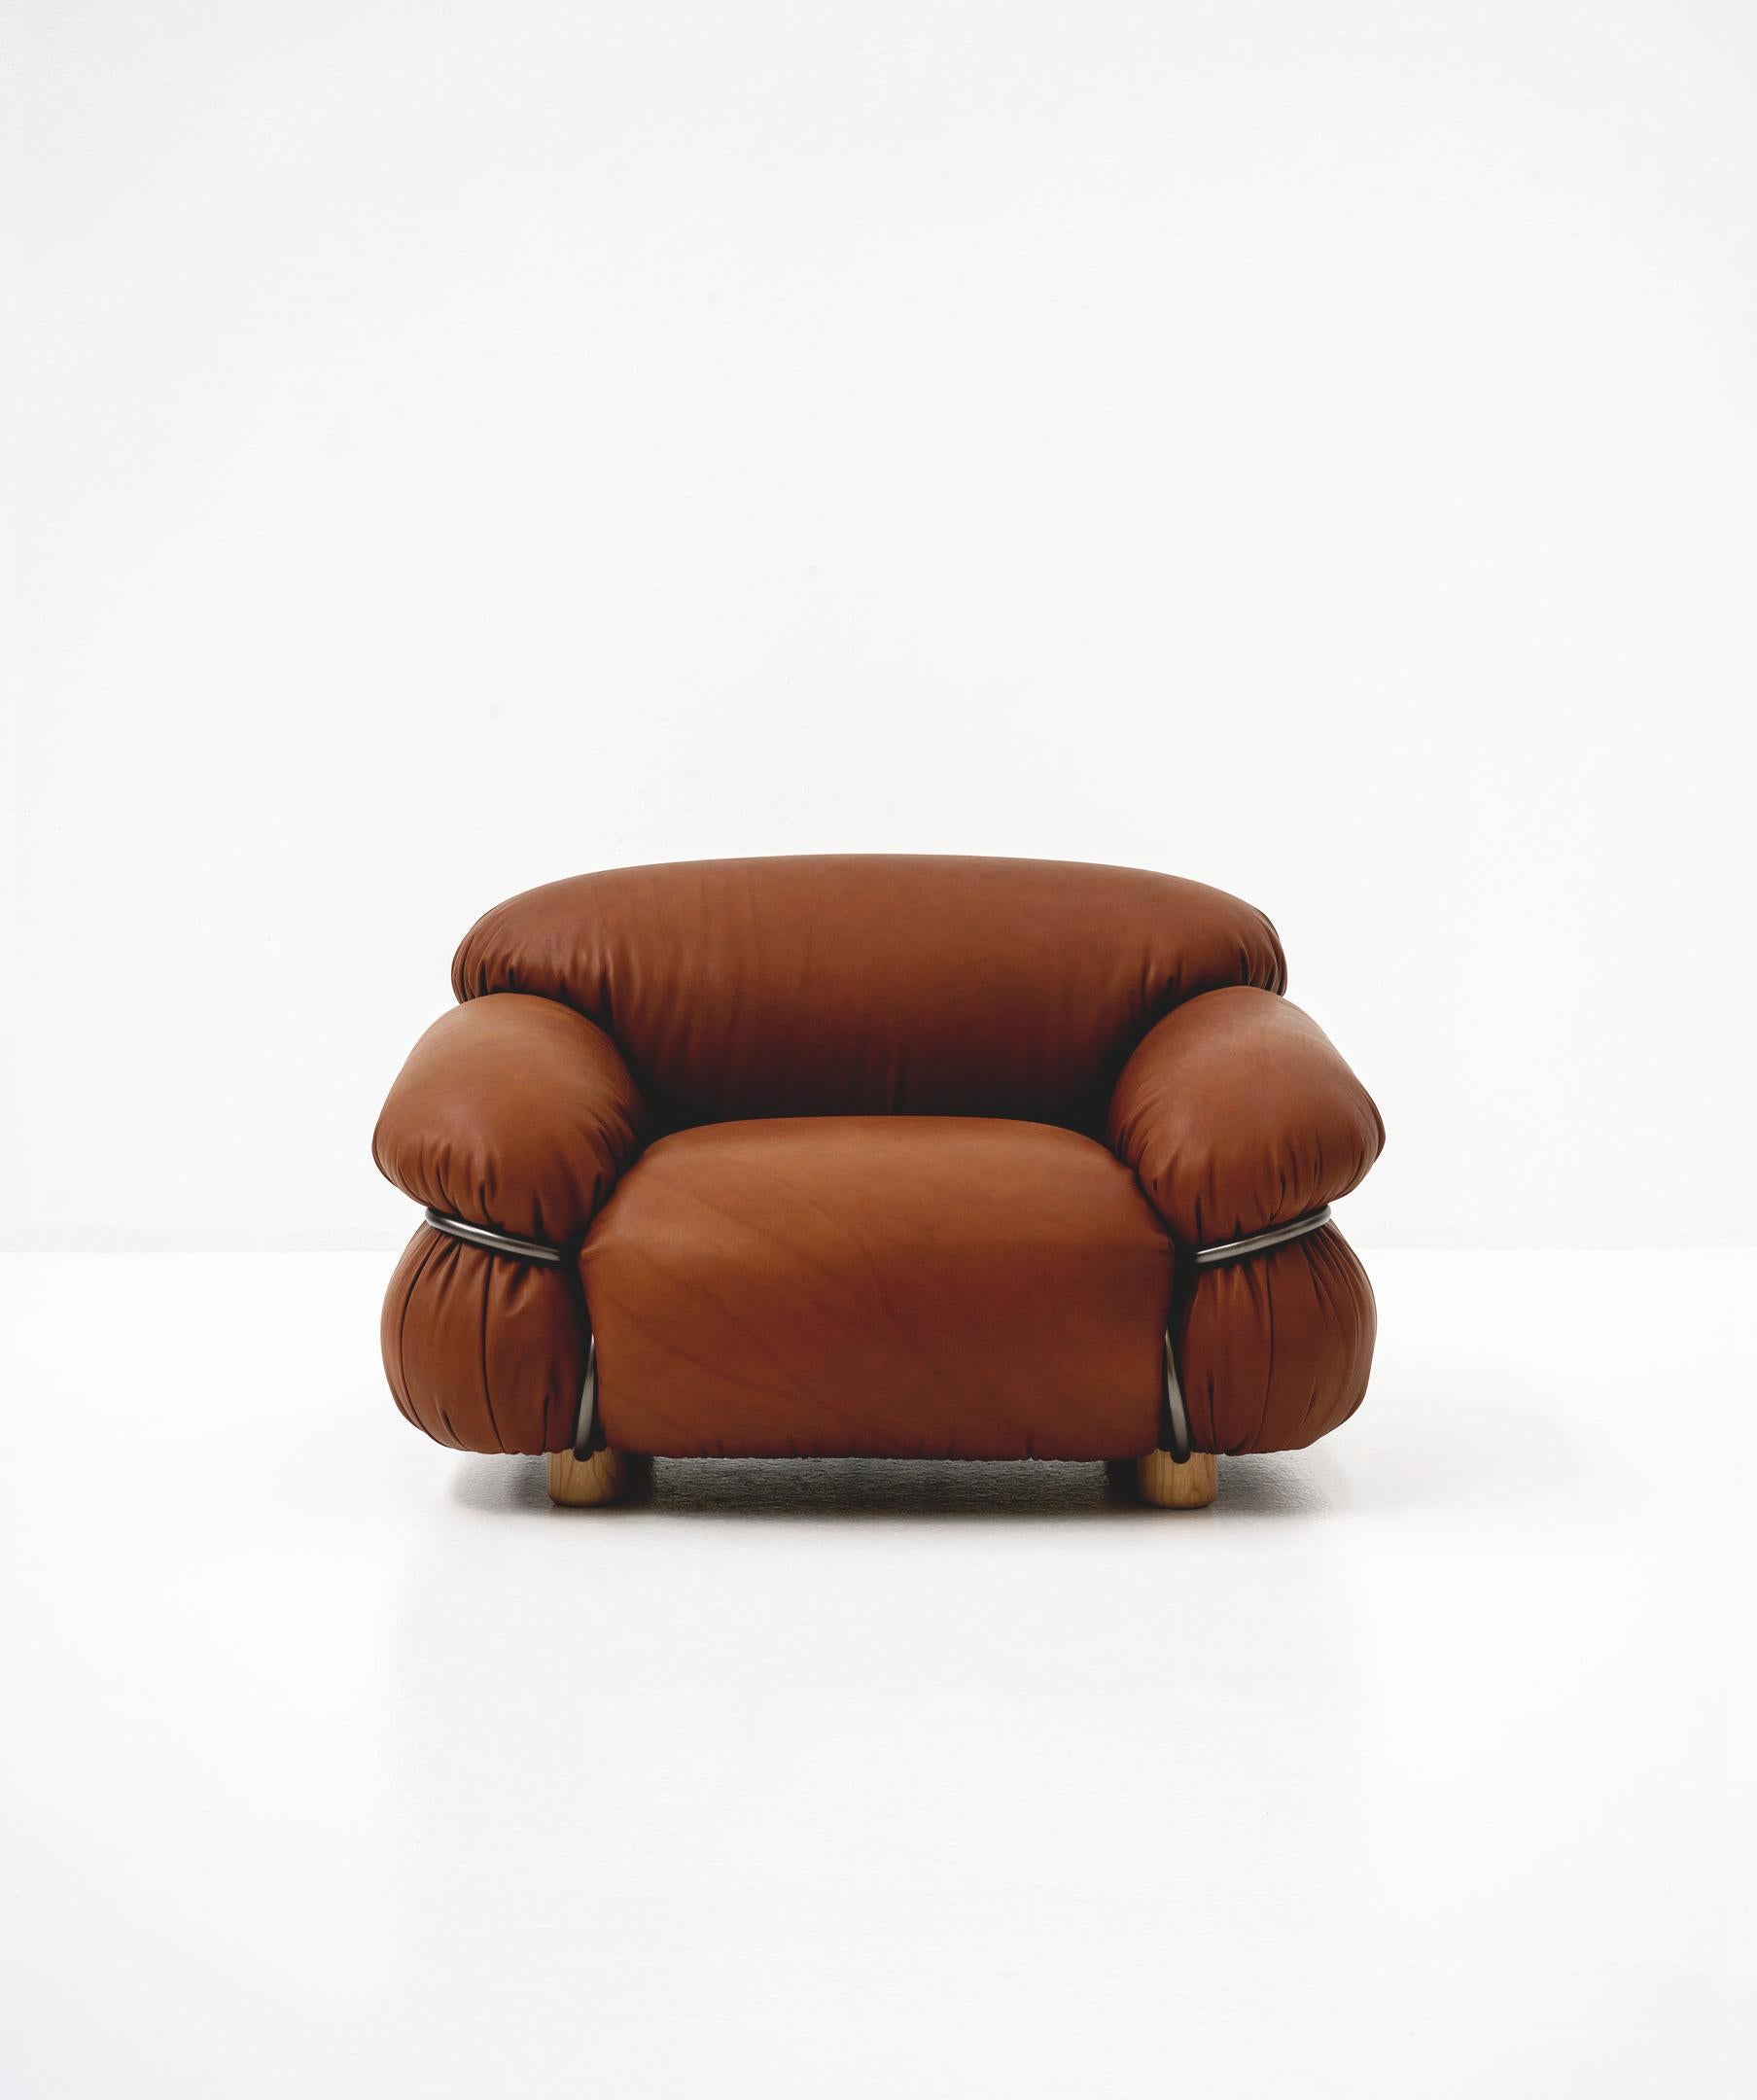 Leather Customizable Tacchini Sesann Sofa Designed by Gianfranco Frattini  For Sale